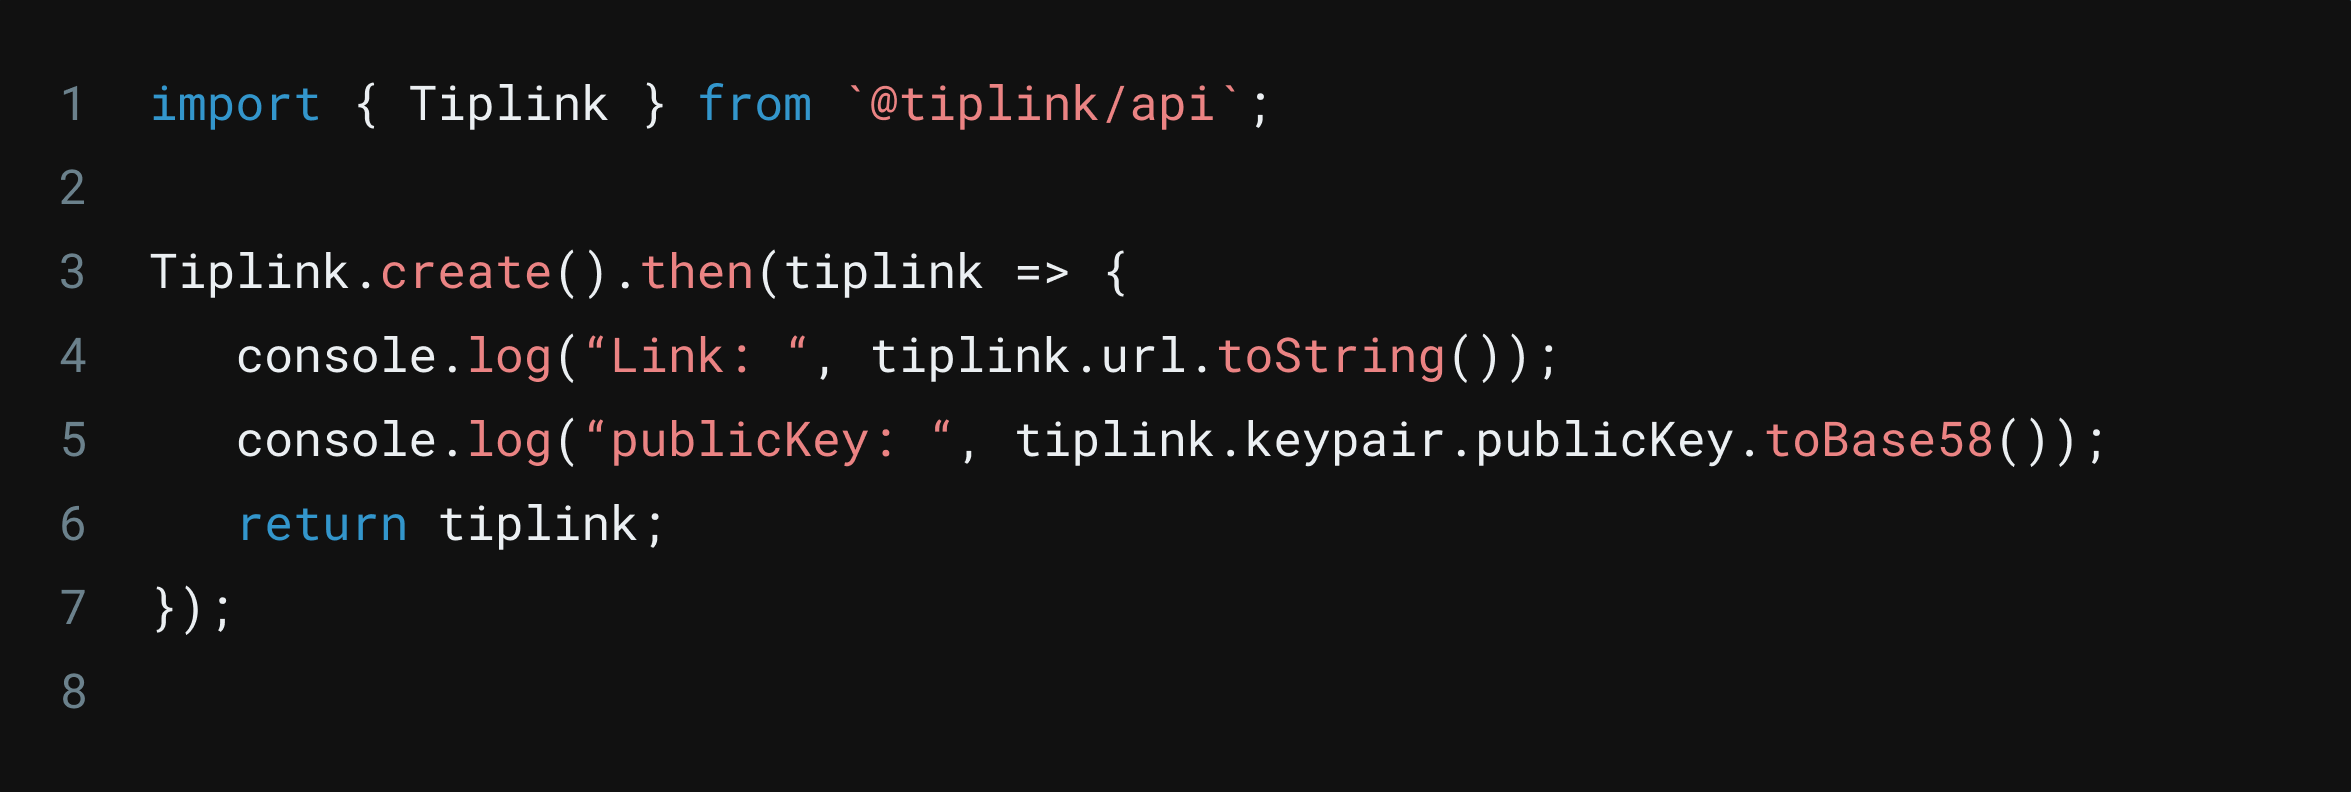 TipLink API Code Snippet